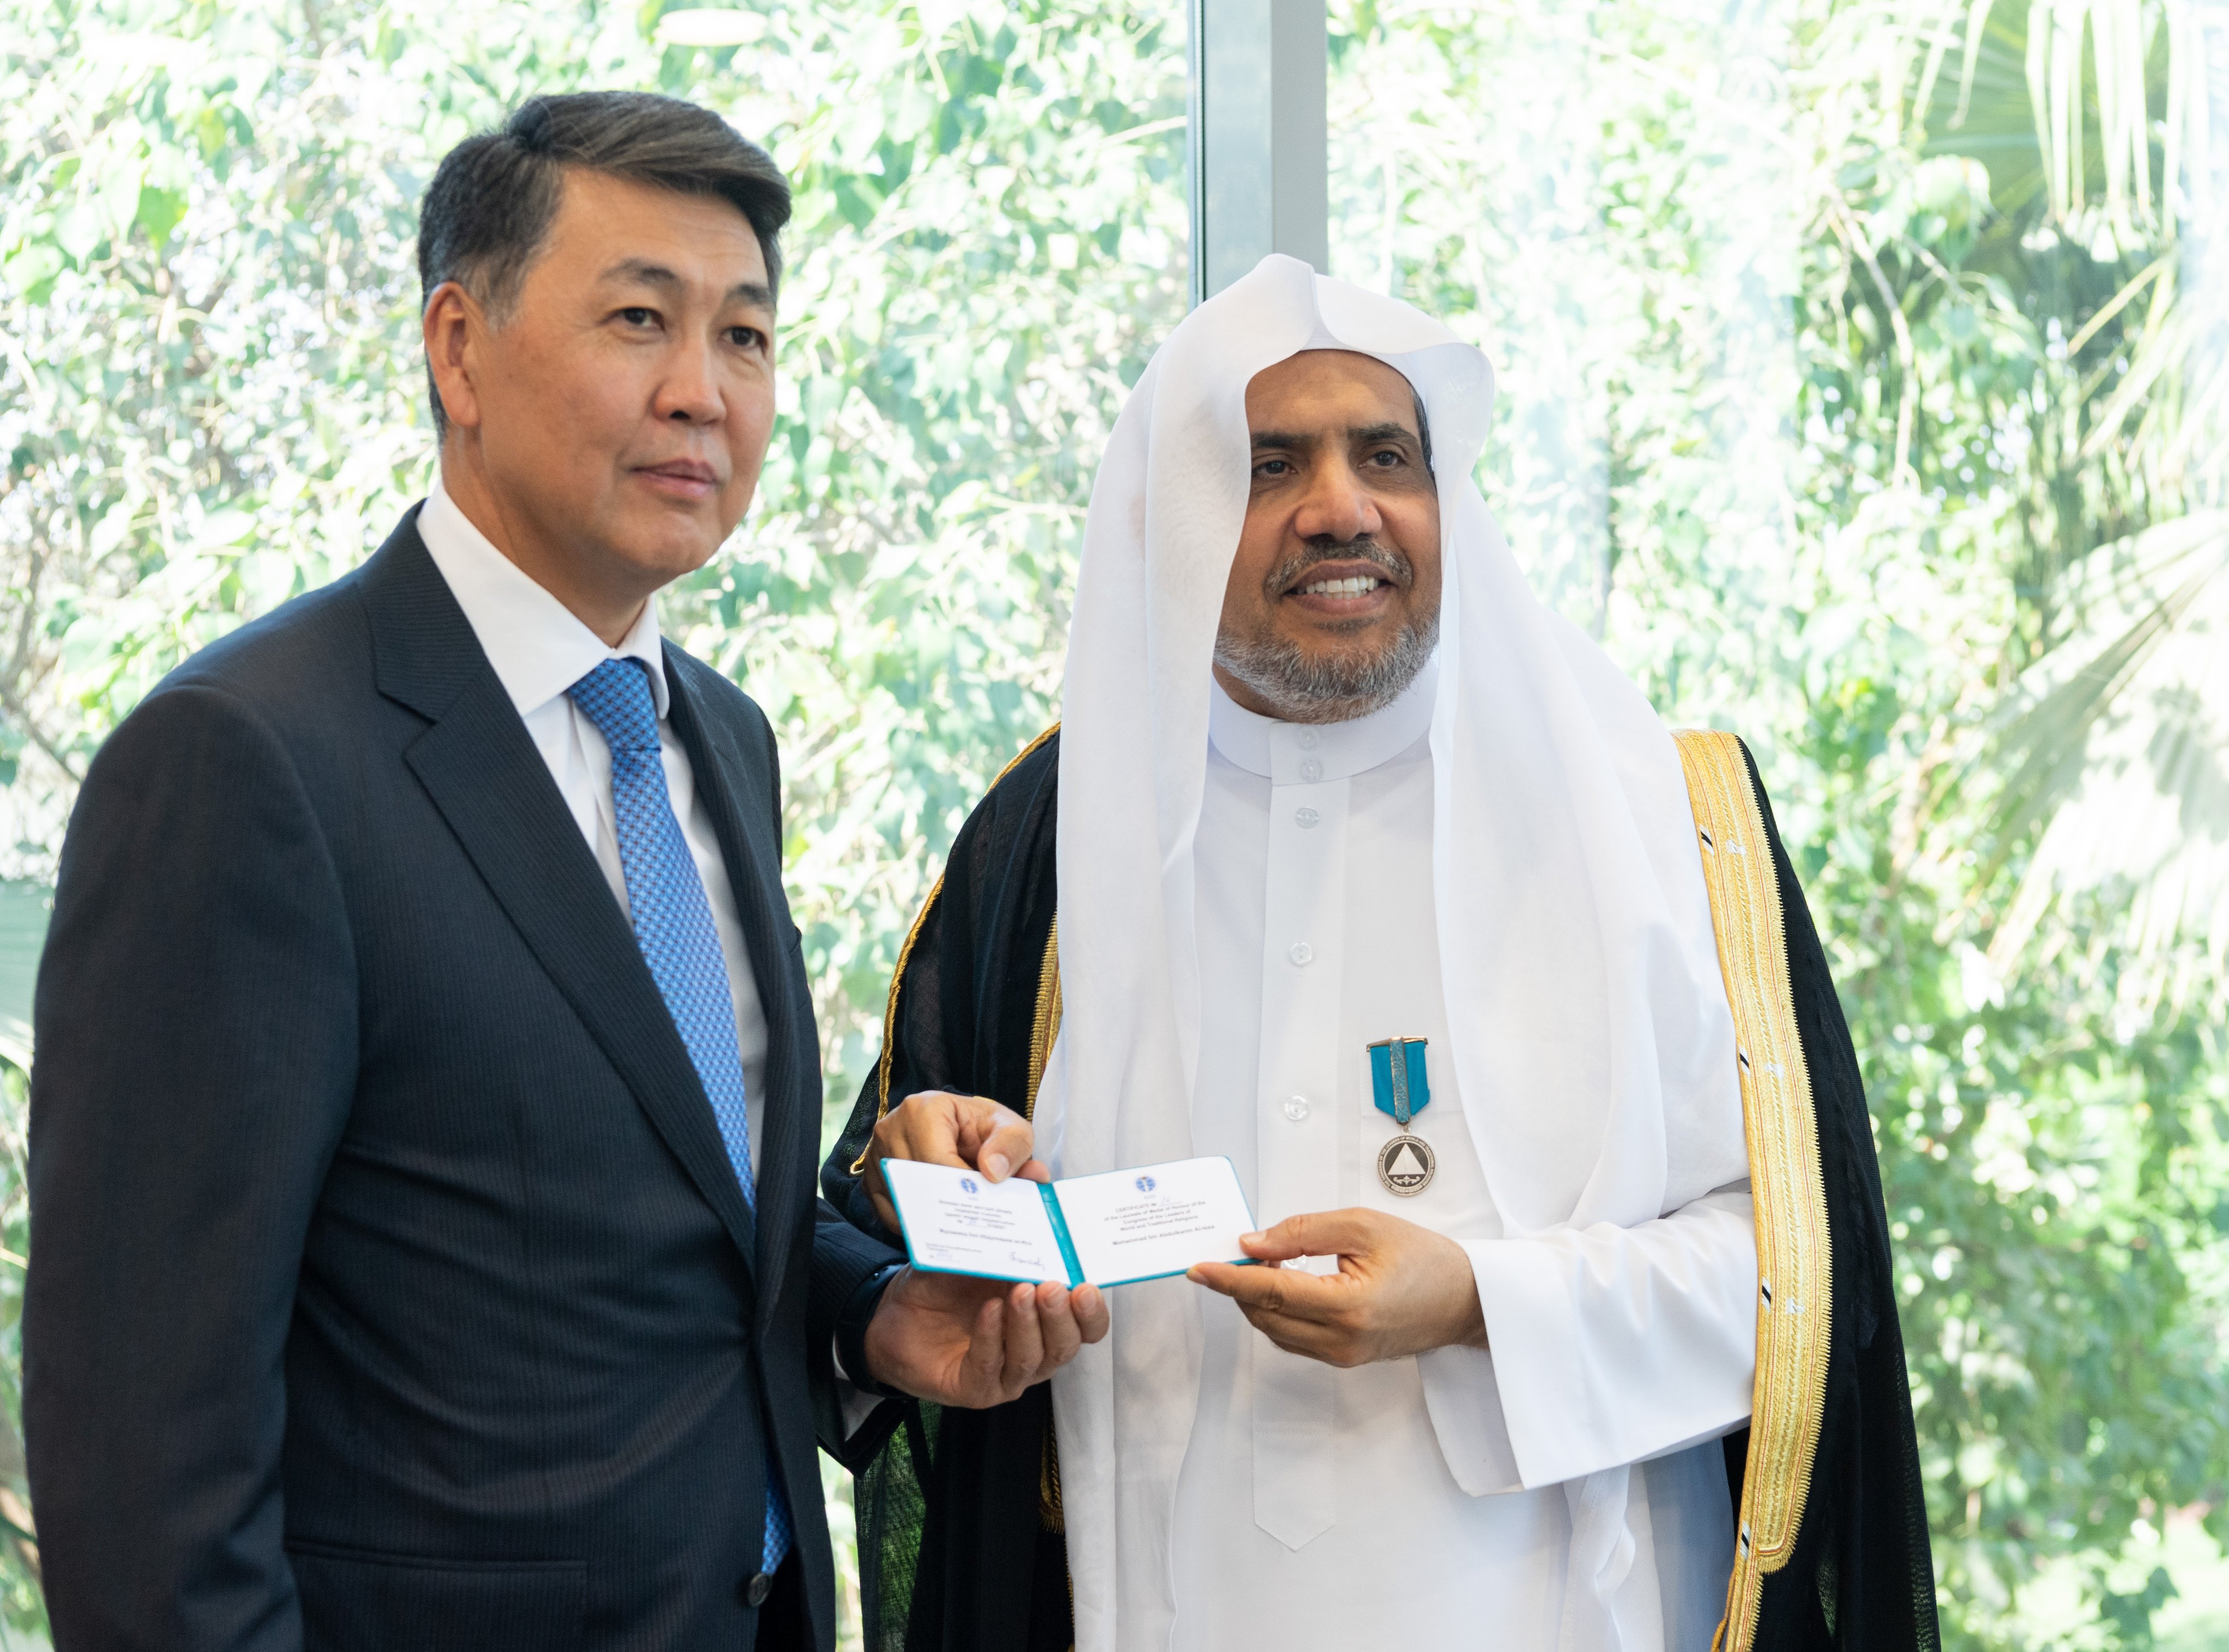 ‎مملکت سعودی عرب میں قازقستان کے سفیر صدر کے فرمان کے مطابق عزت مآب شیخ ڈاکٹر محمد العیسی کو  مذہبی قیادت کانفرنس کا اعزازی تمغہ  پیش  کر رہے ہیں